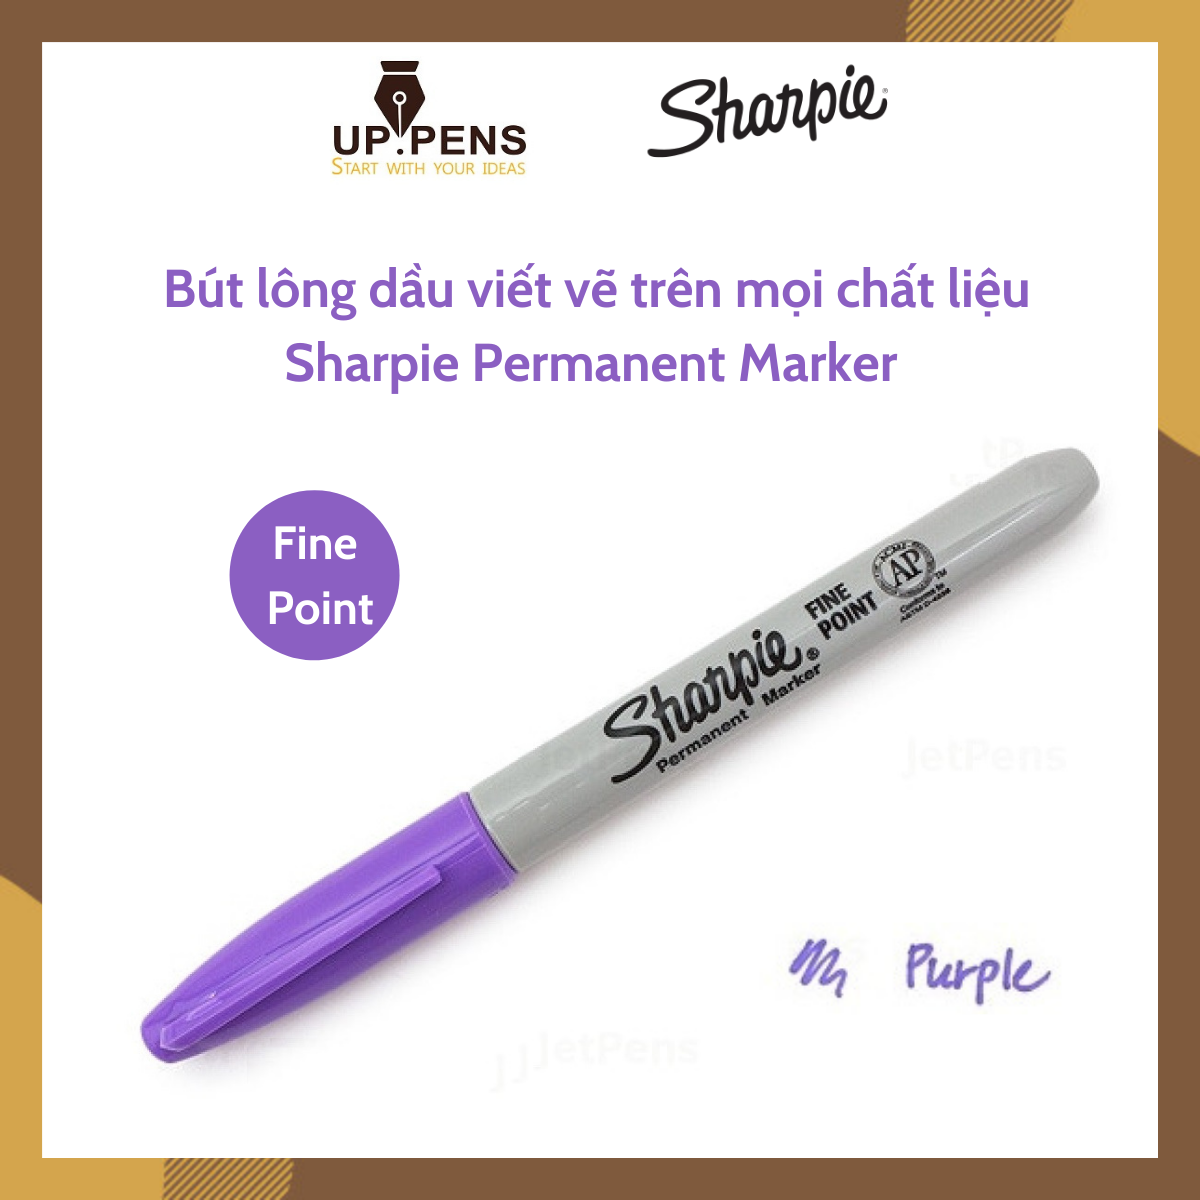 Bút lông dầu viết vẽ trên mọi chất liệu Sharpie Permanent Marker – Fine Point – Màu tím (Purple)